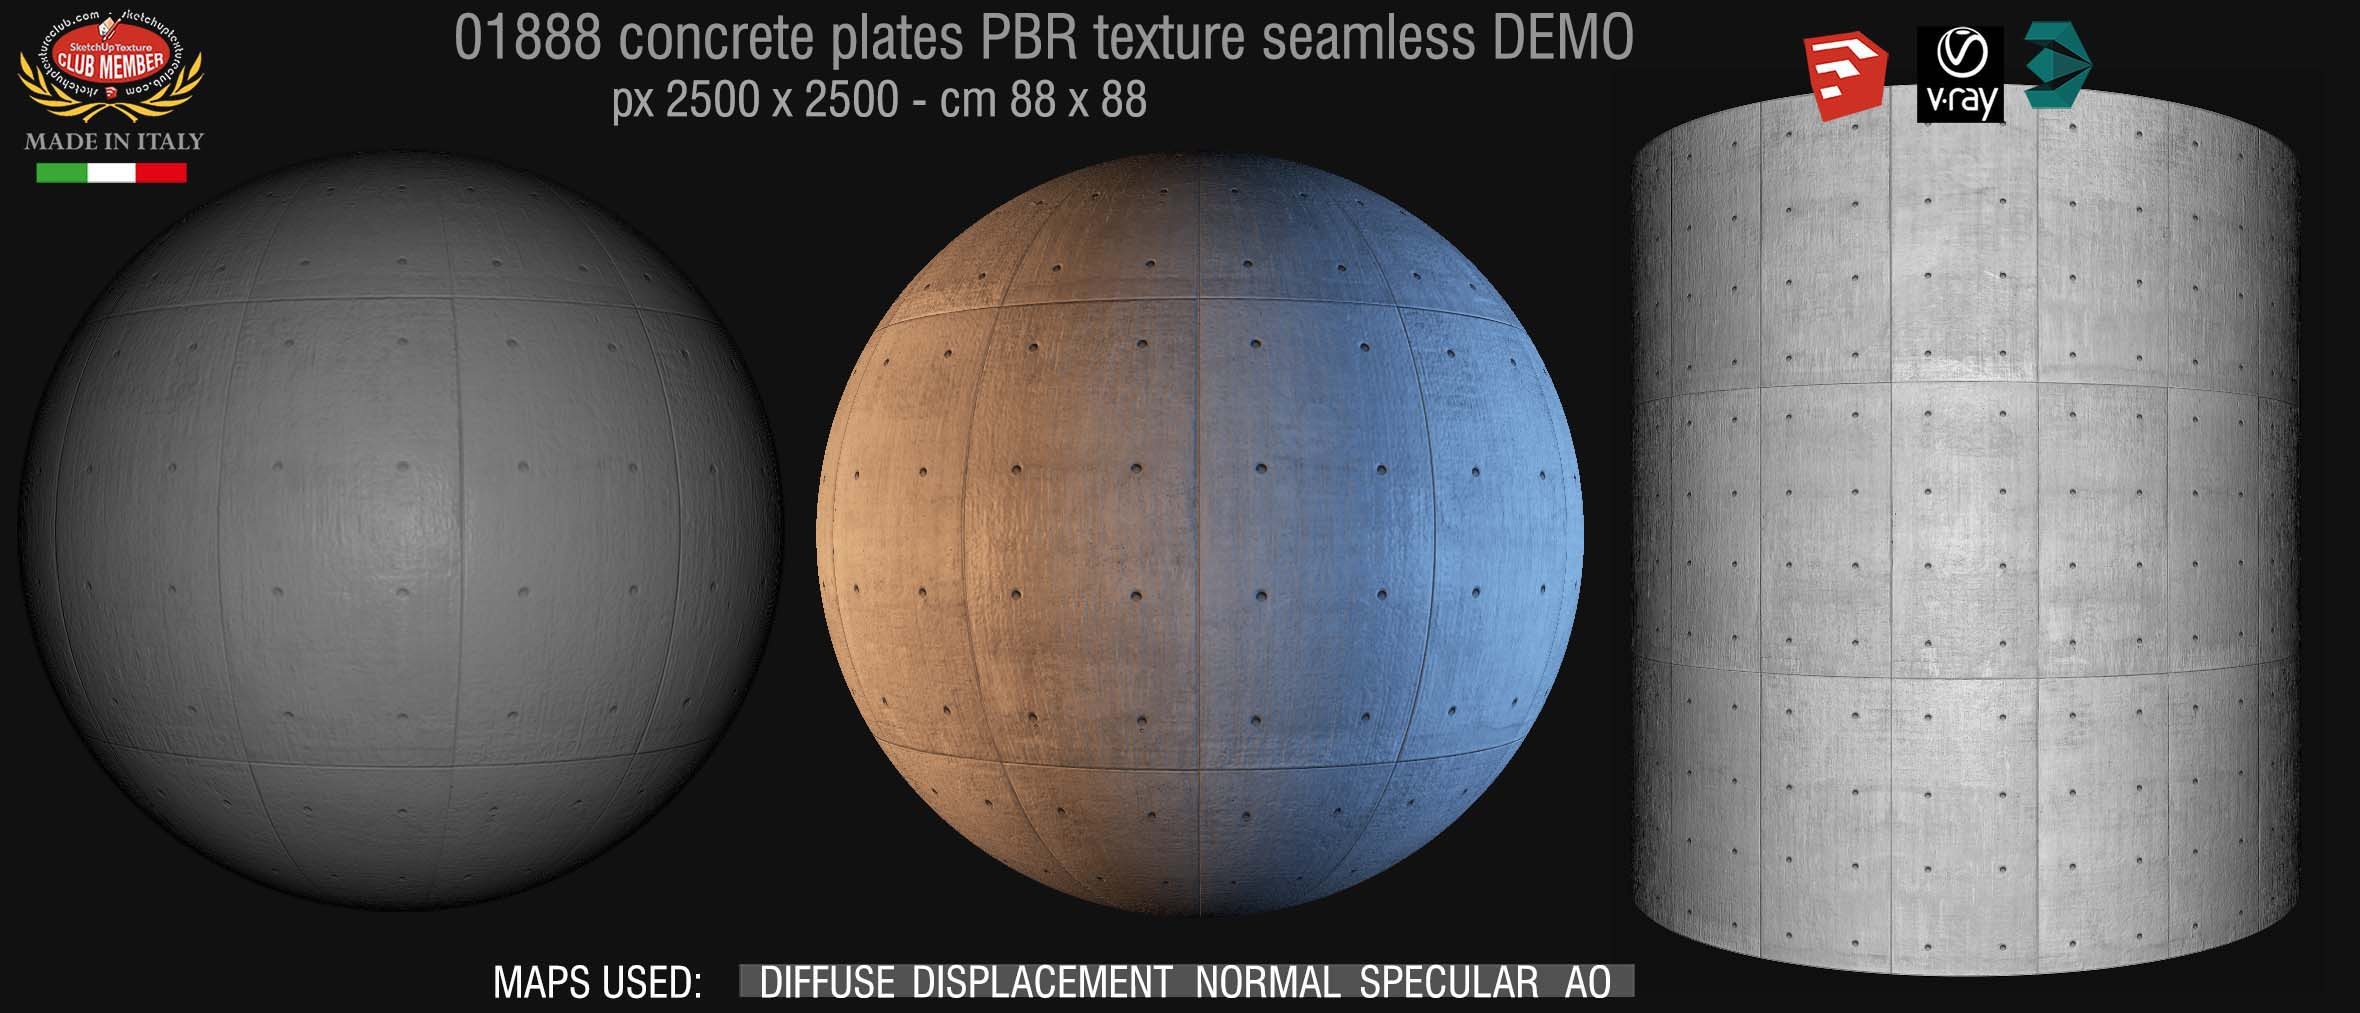 01888 tadao ando concrete plates PBR texture seamless DEMO